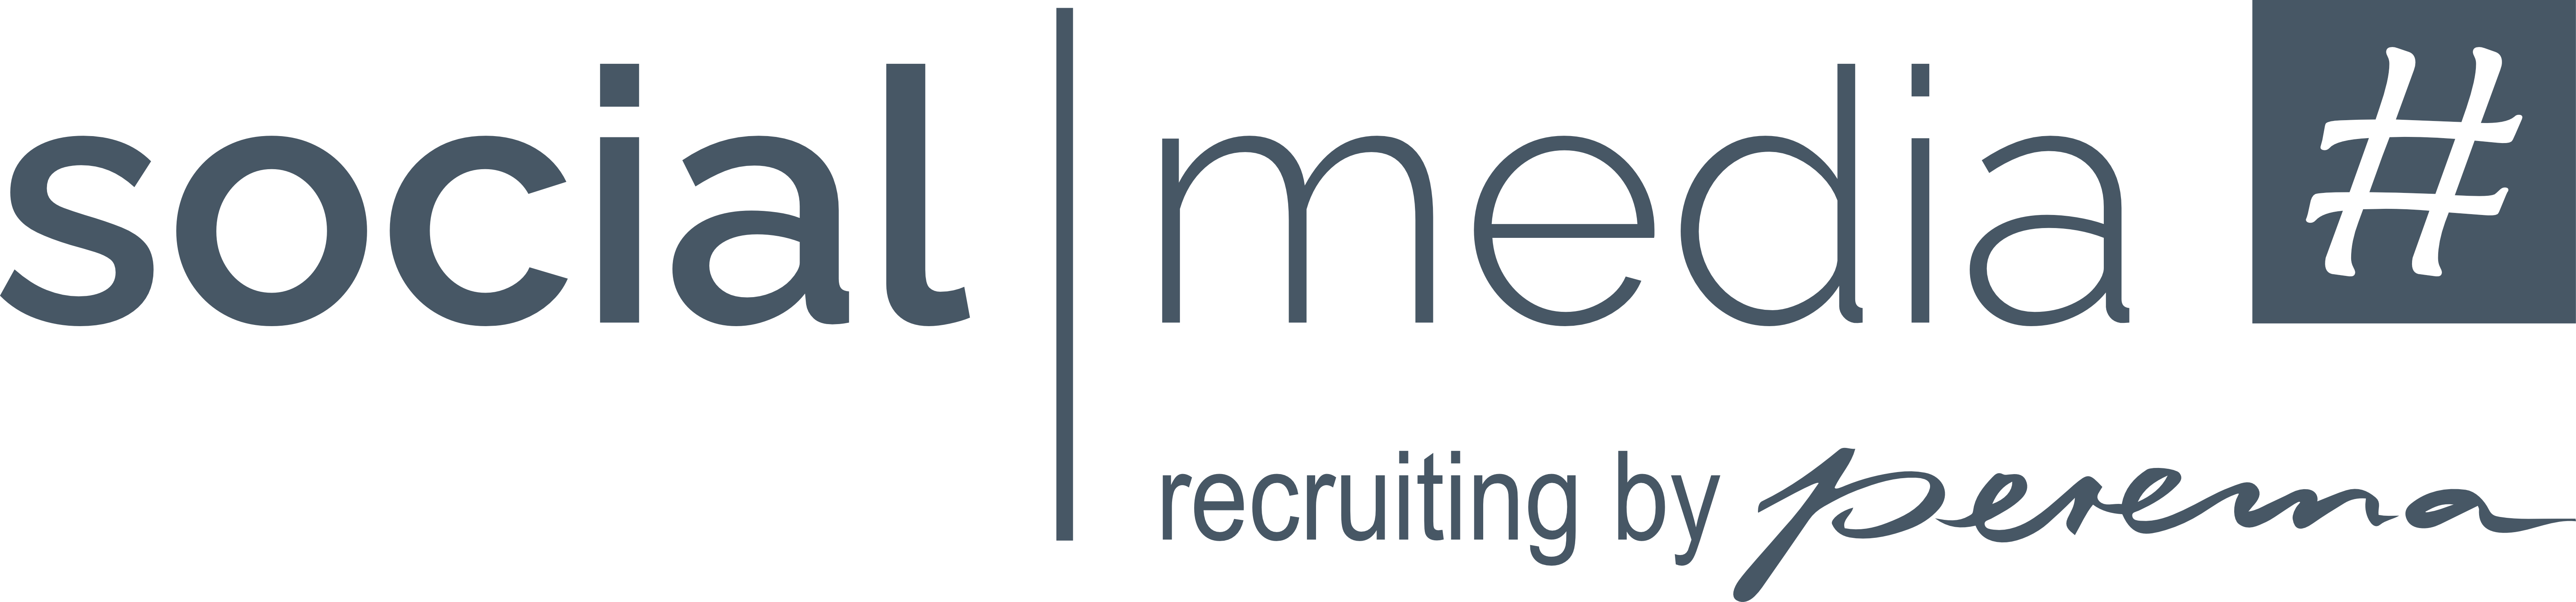 Logo_socialmediarecruiting_farbe